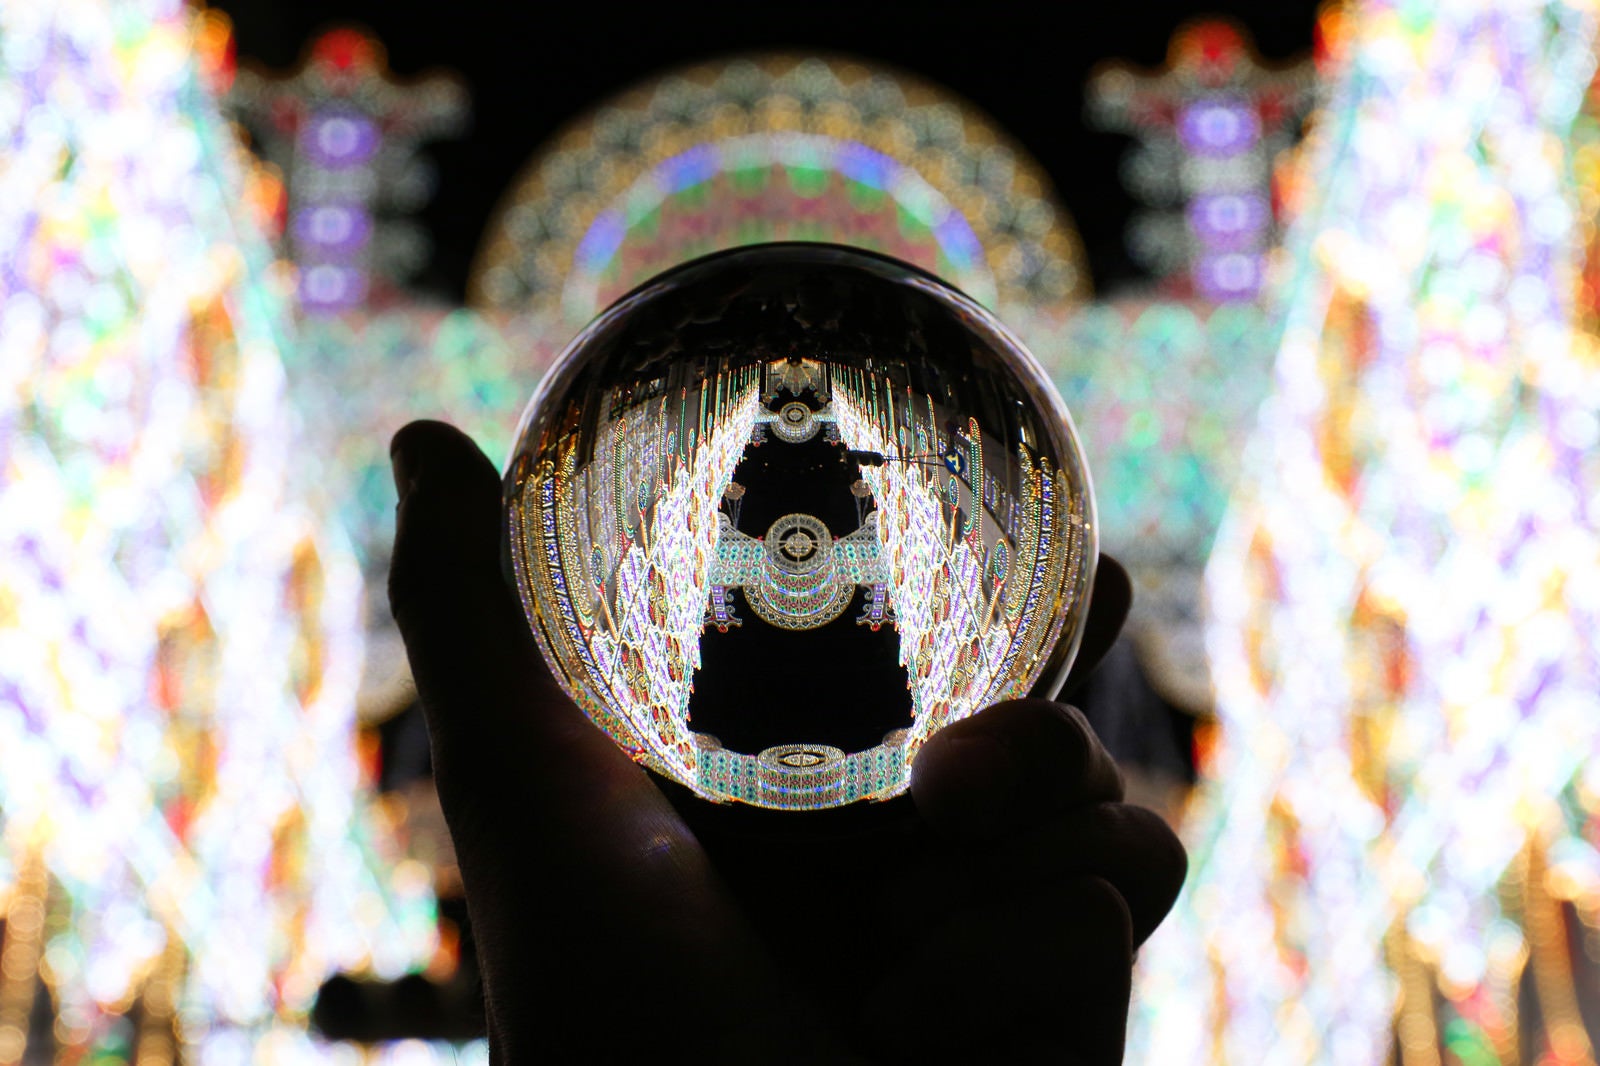 「水晶玉の中に続くイルミネーション」の写真